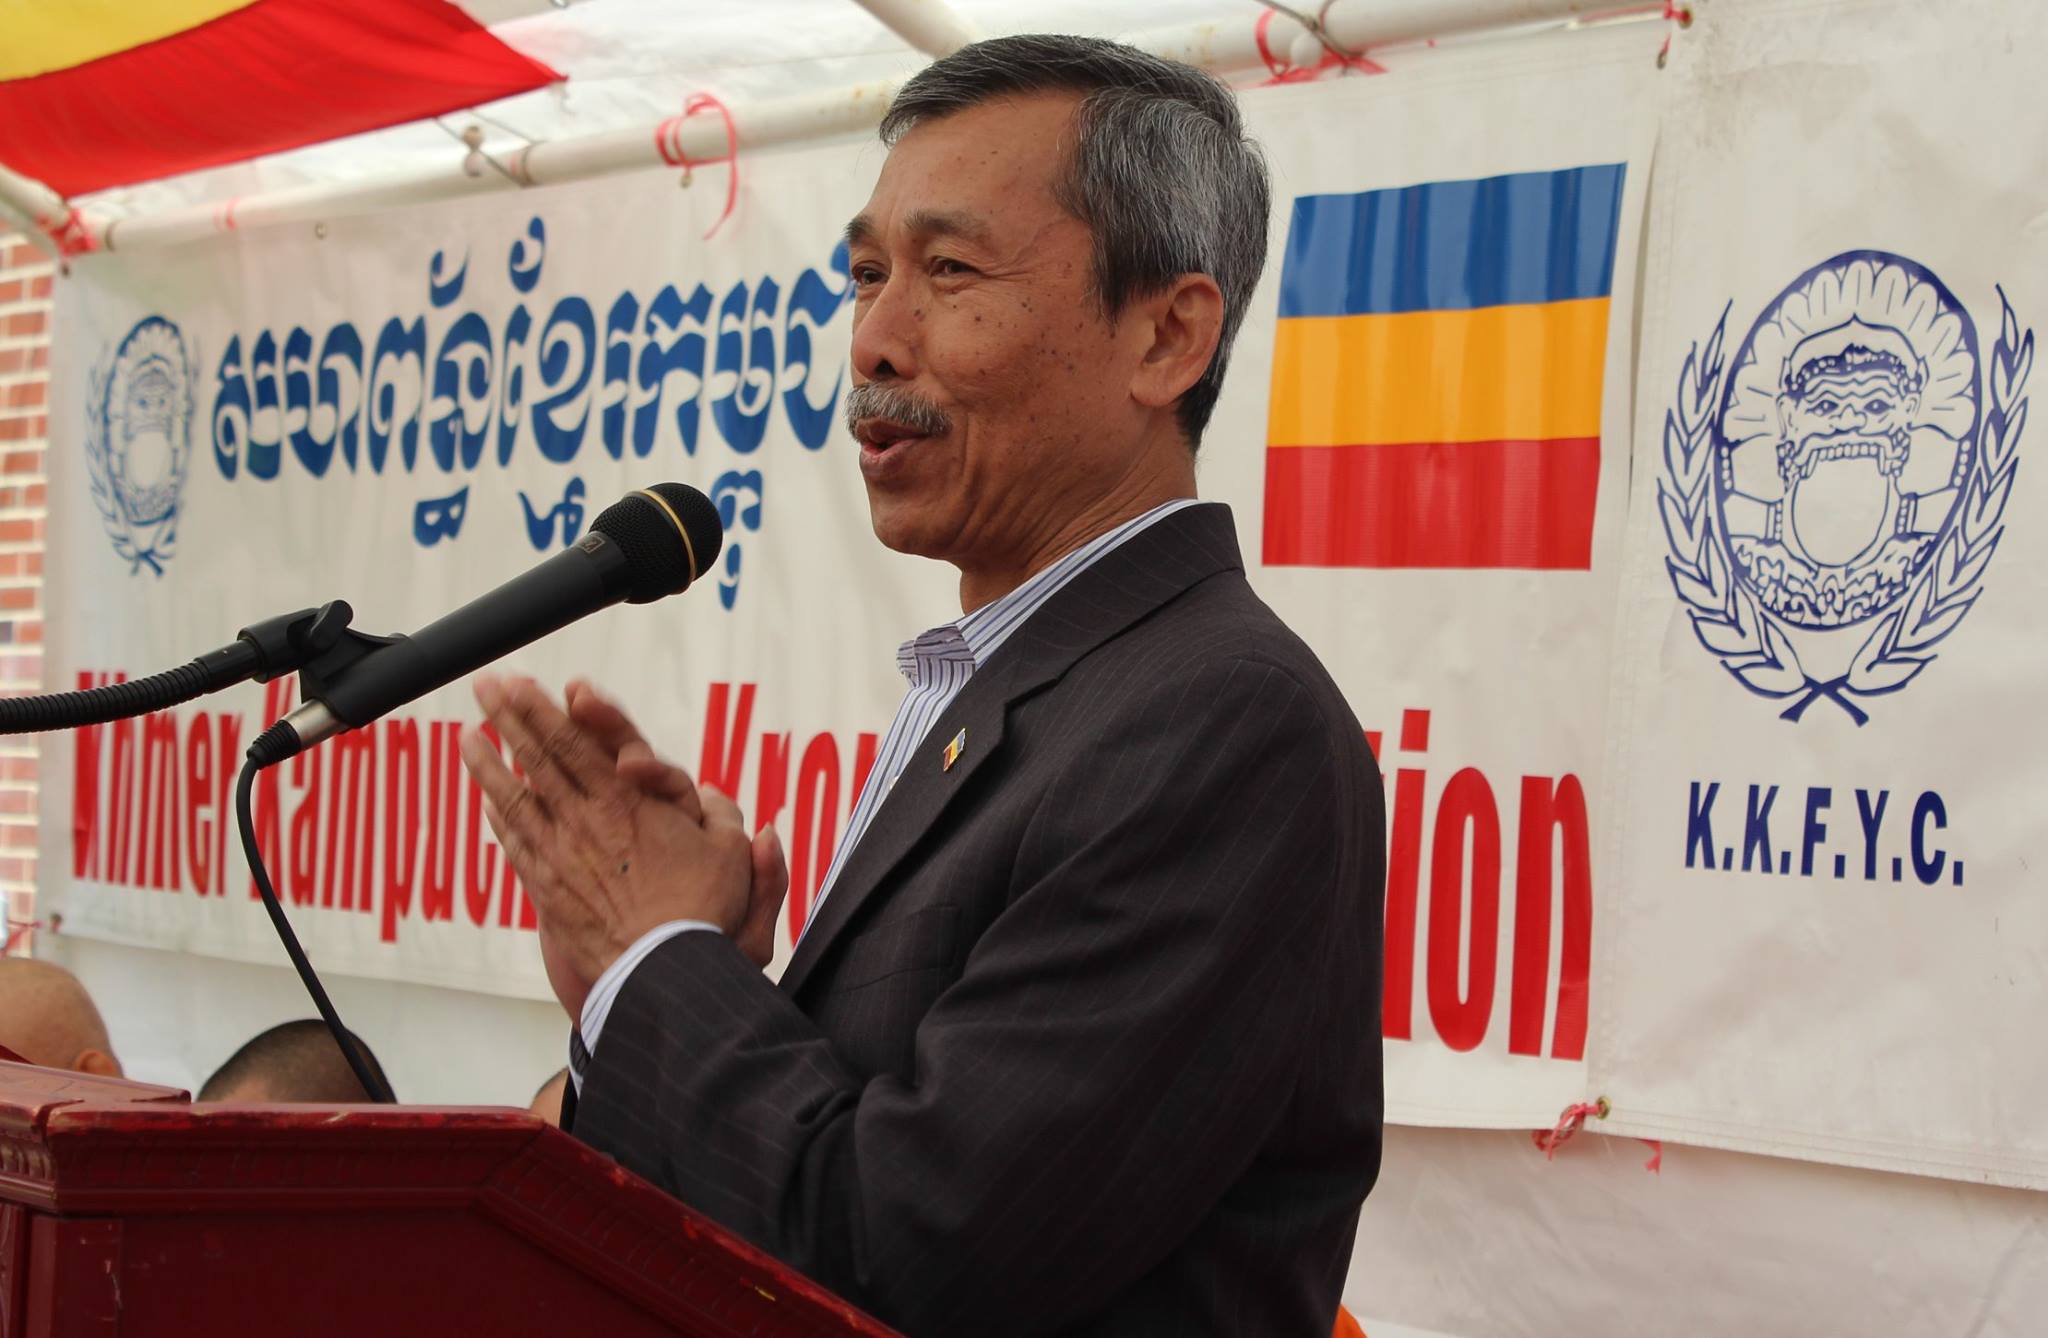 Ông Trần Mannrinh Giám Đốc Kế Hoạch của Liên Minh Khmer Kampuchea-Krom. ảnh: Thach Preichea Koeun l Báo Prey Nokor